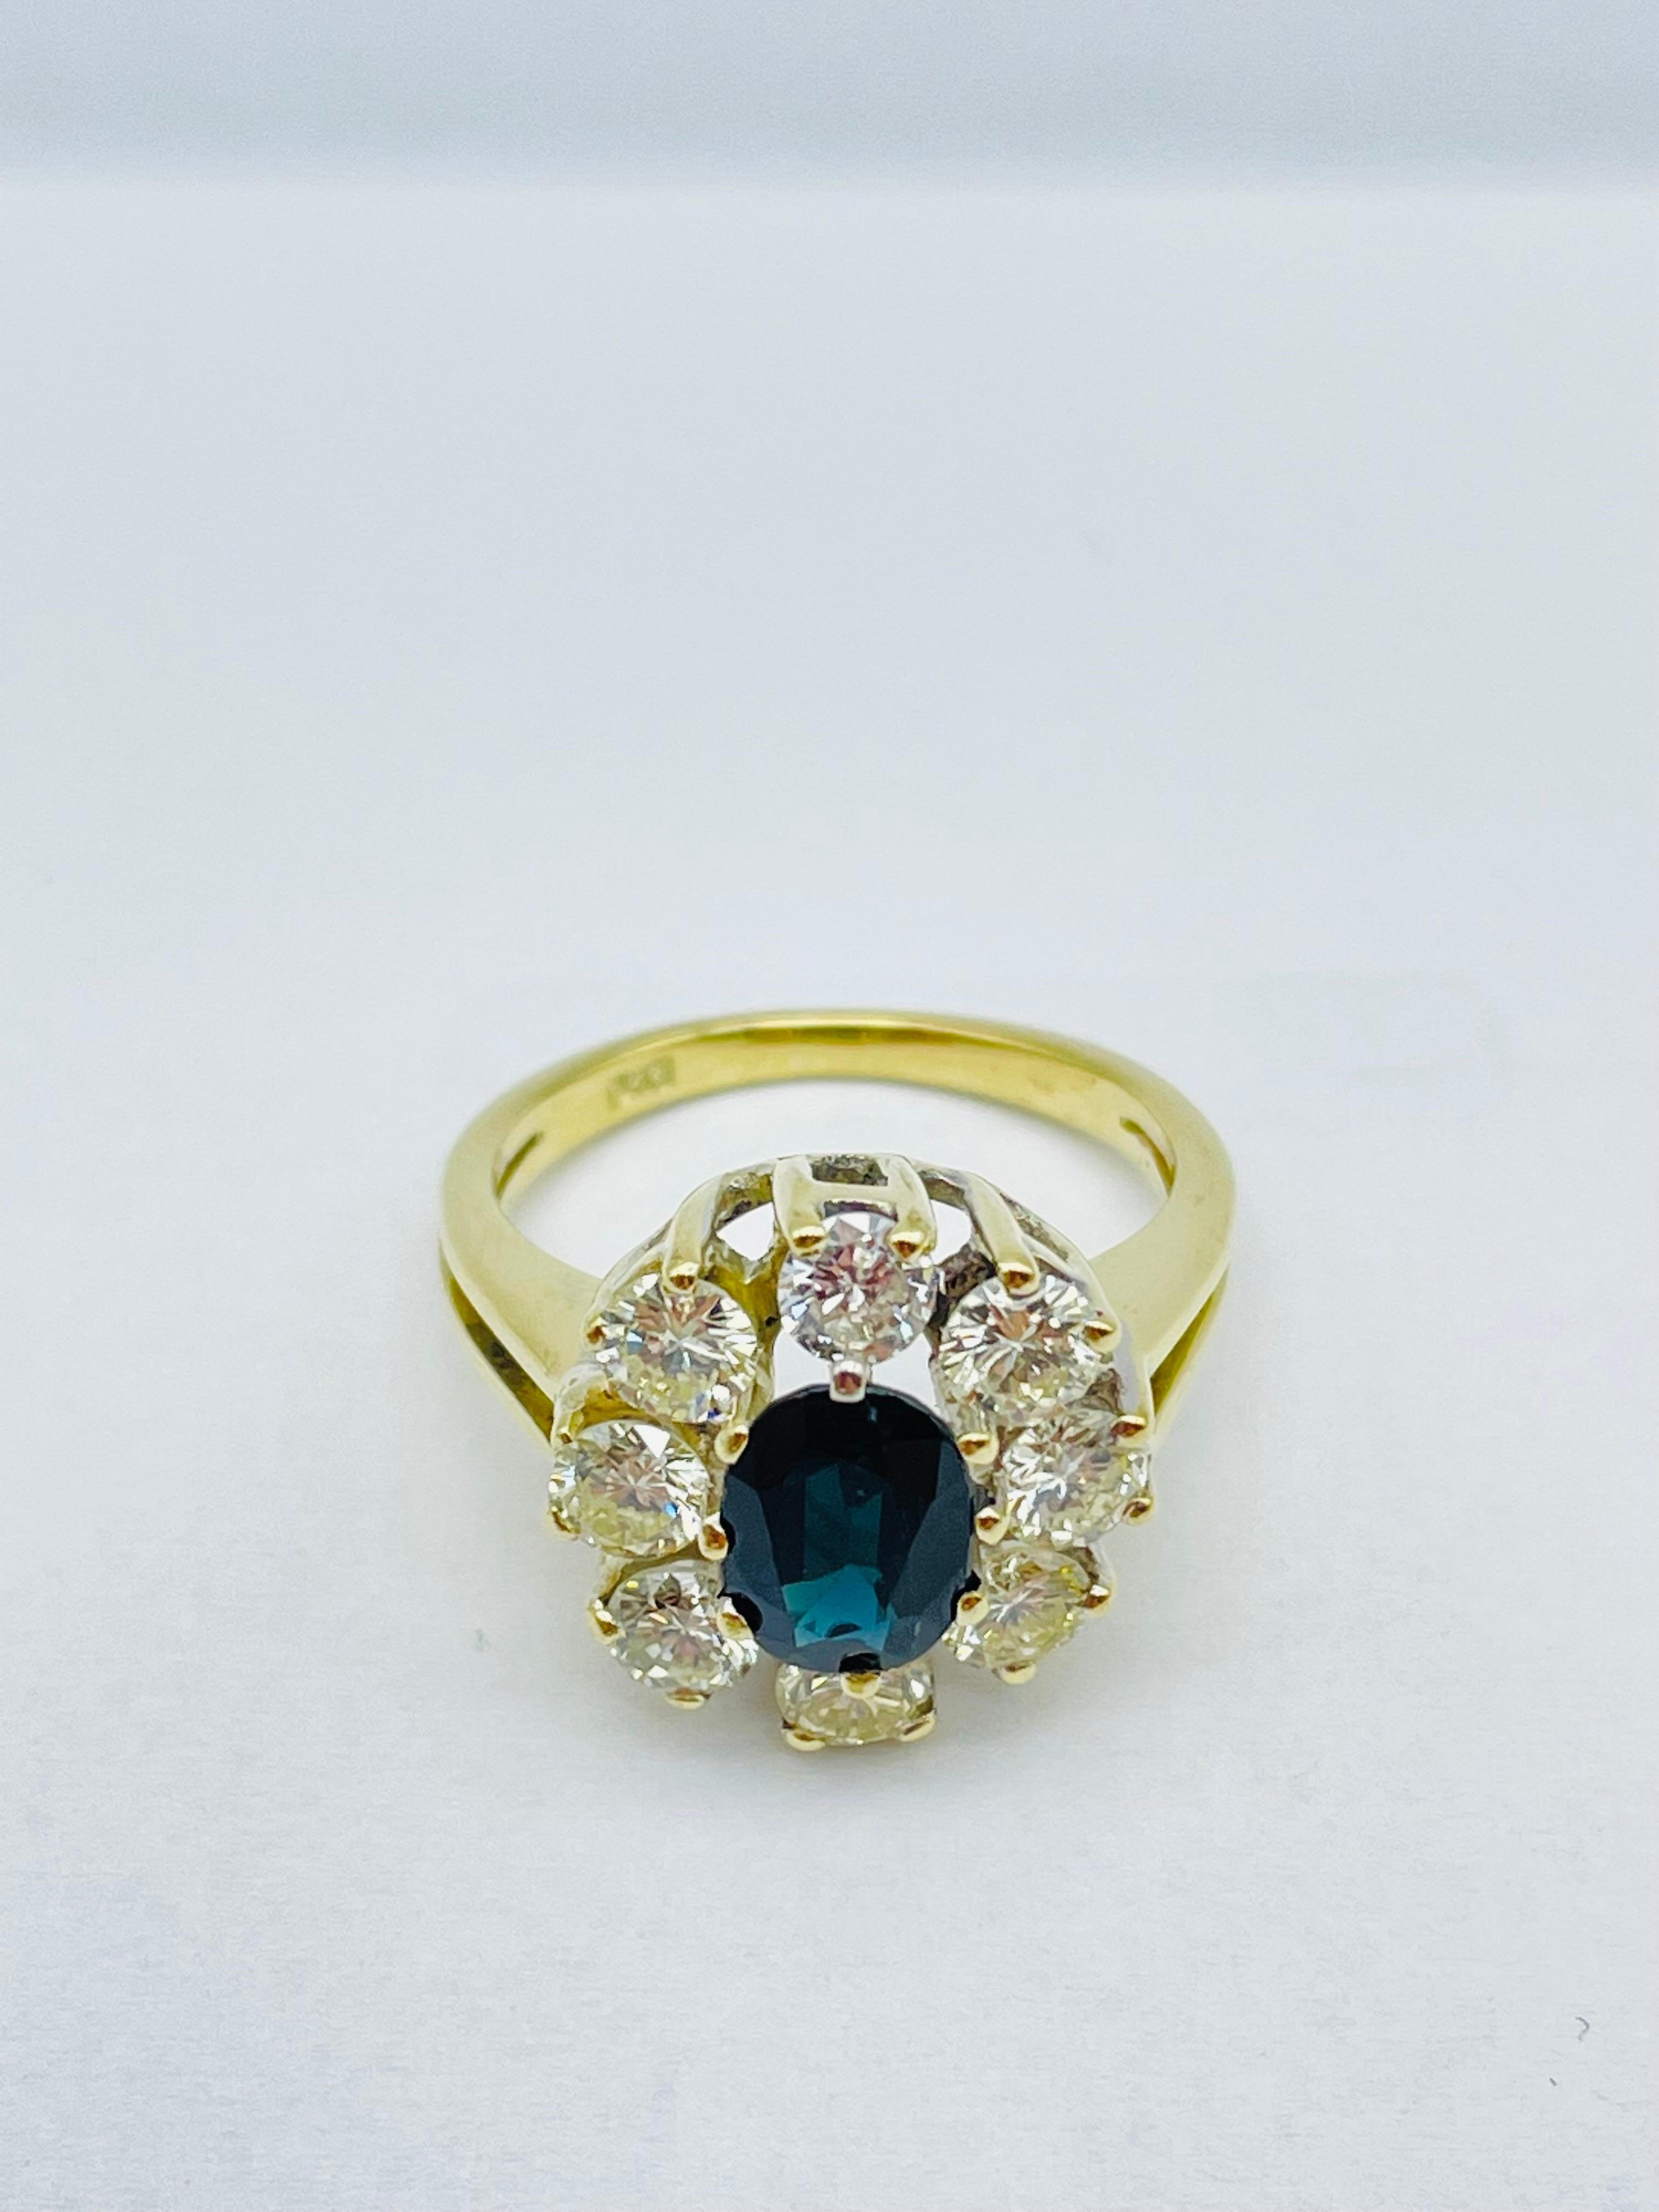 Unique 14k Gold Ring with 8 Brilliant-Cut Diamonds Each 0.15 Carat Blue Sapphire For Sale 5